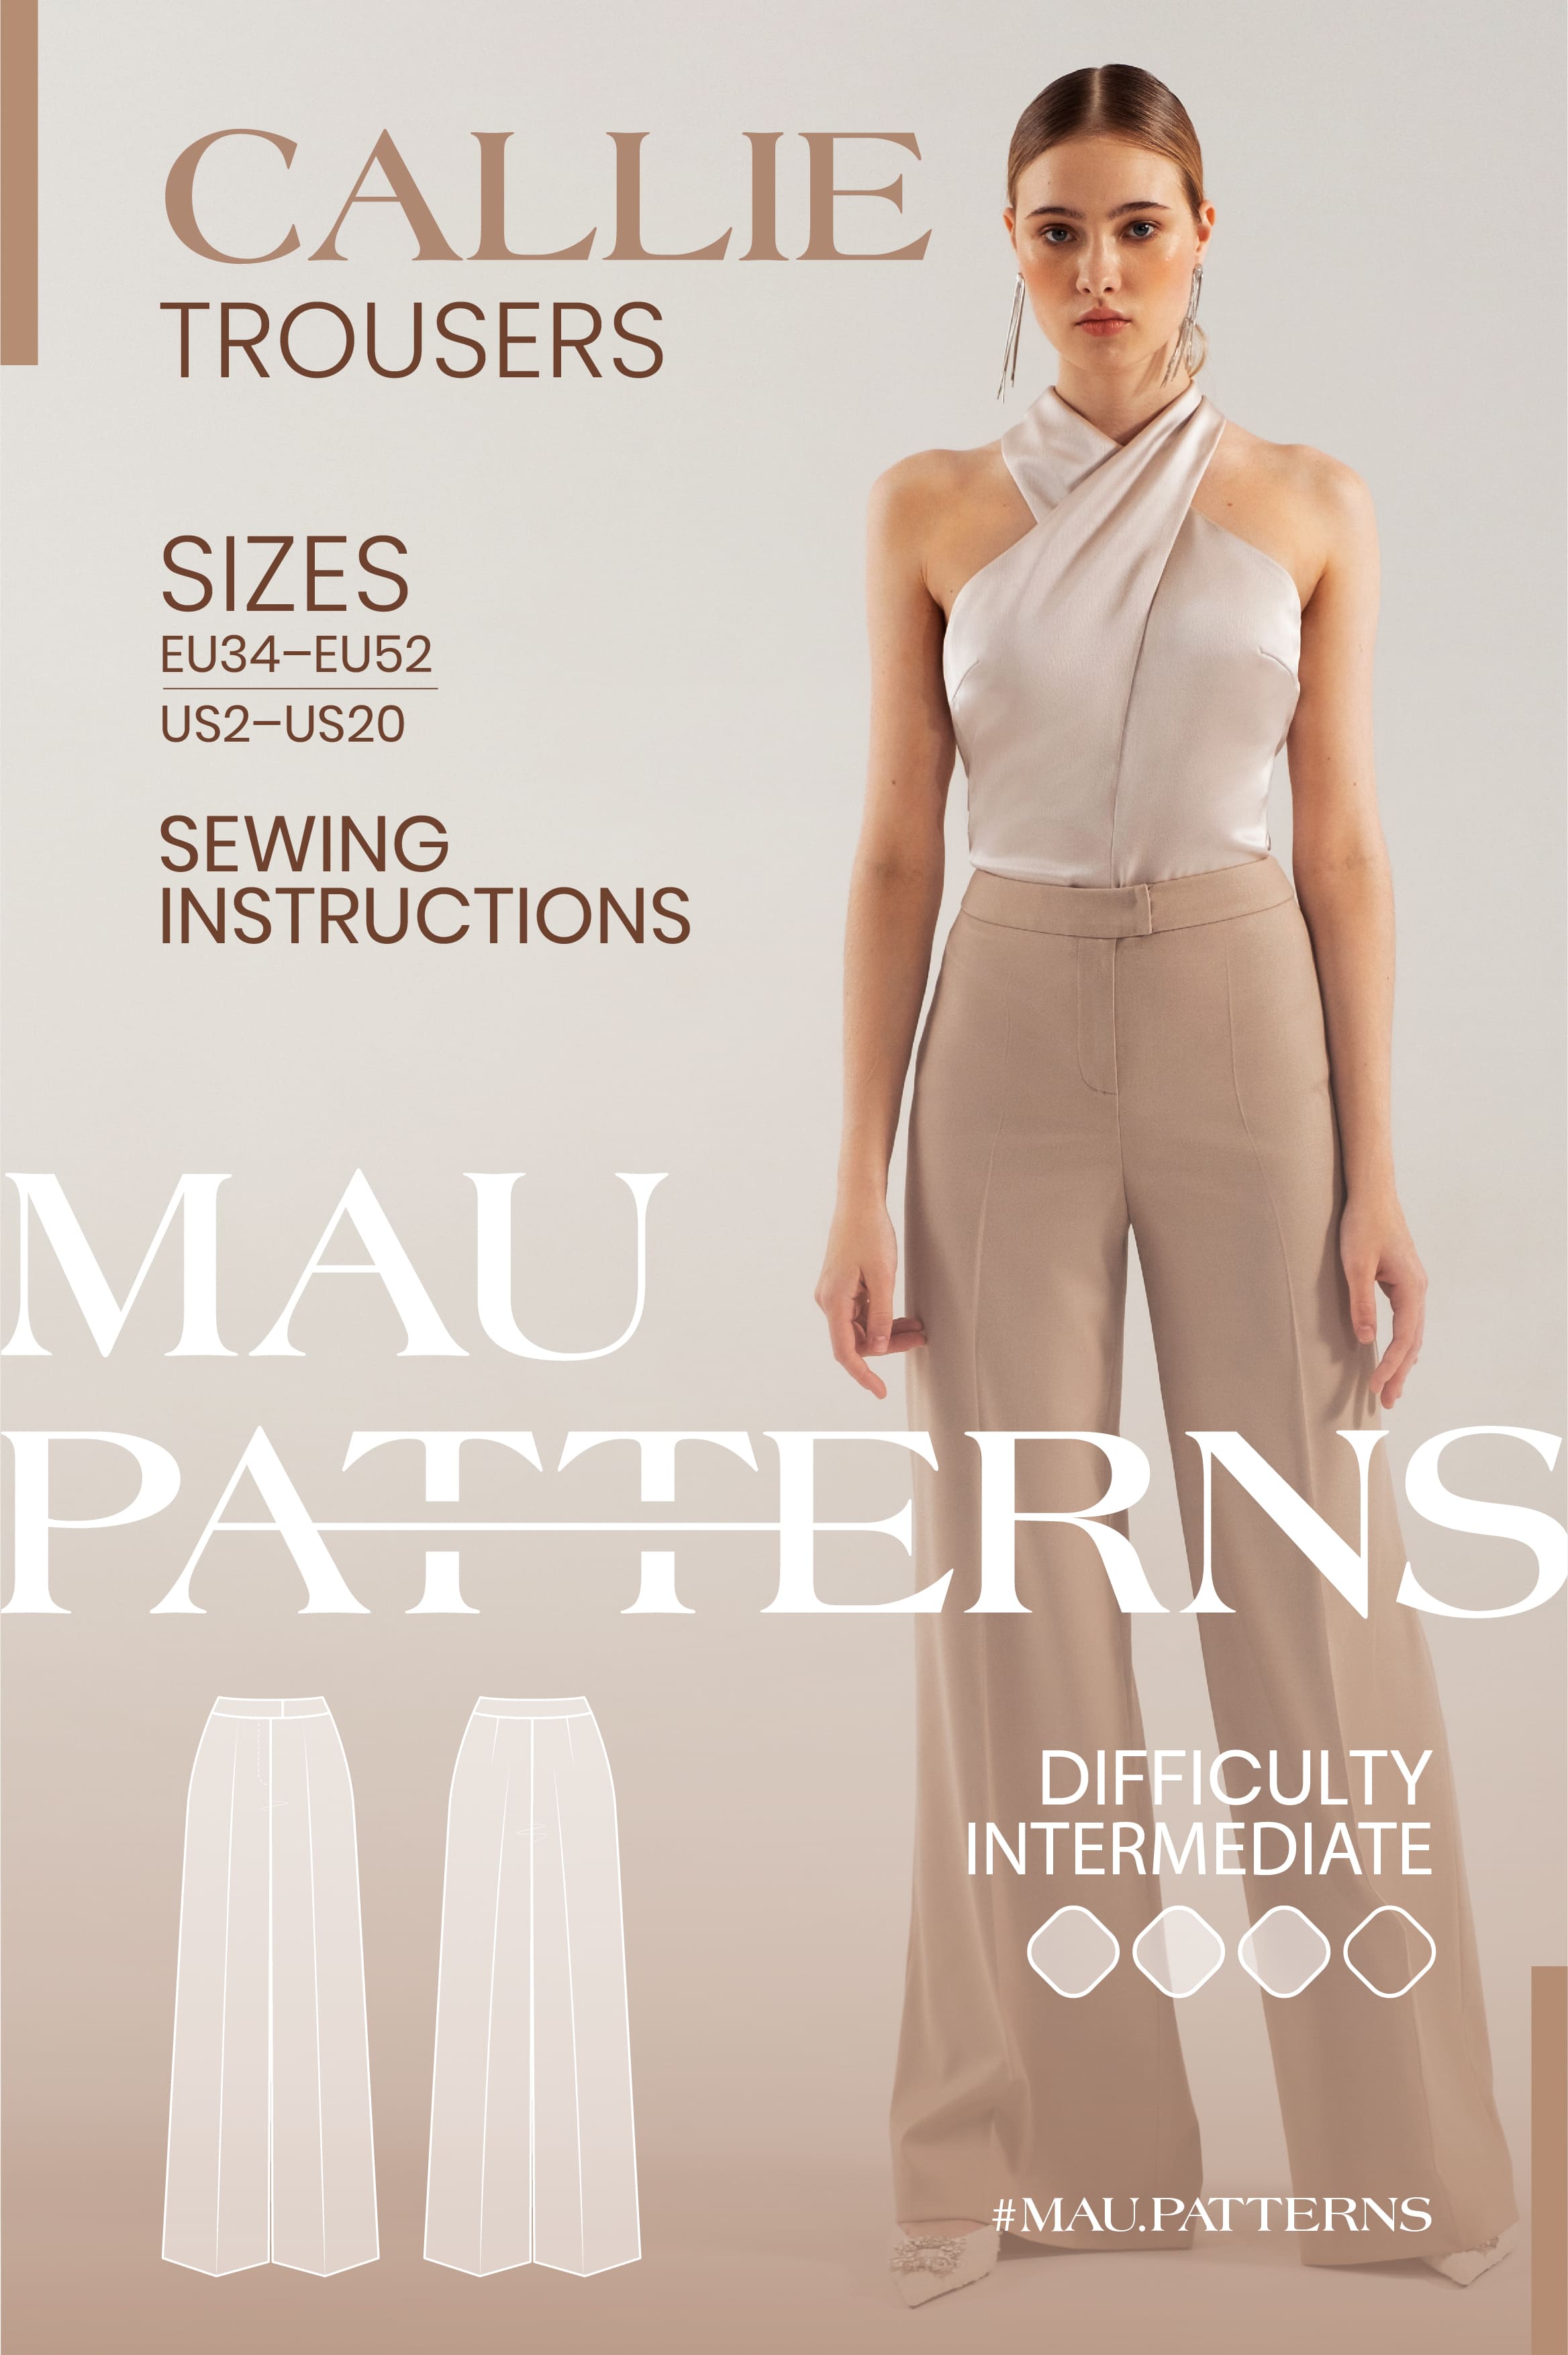 Patterns :: Women's patterns :: Trousers and shorts :: MAU patterns Callie trousers  sewing pattern, US sizes 2 - 20 / EU 34 - 52 / UK 6 - 24